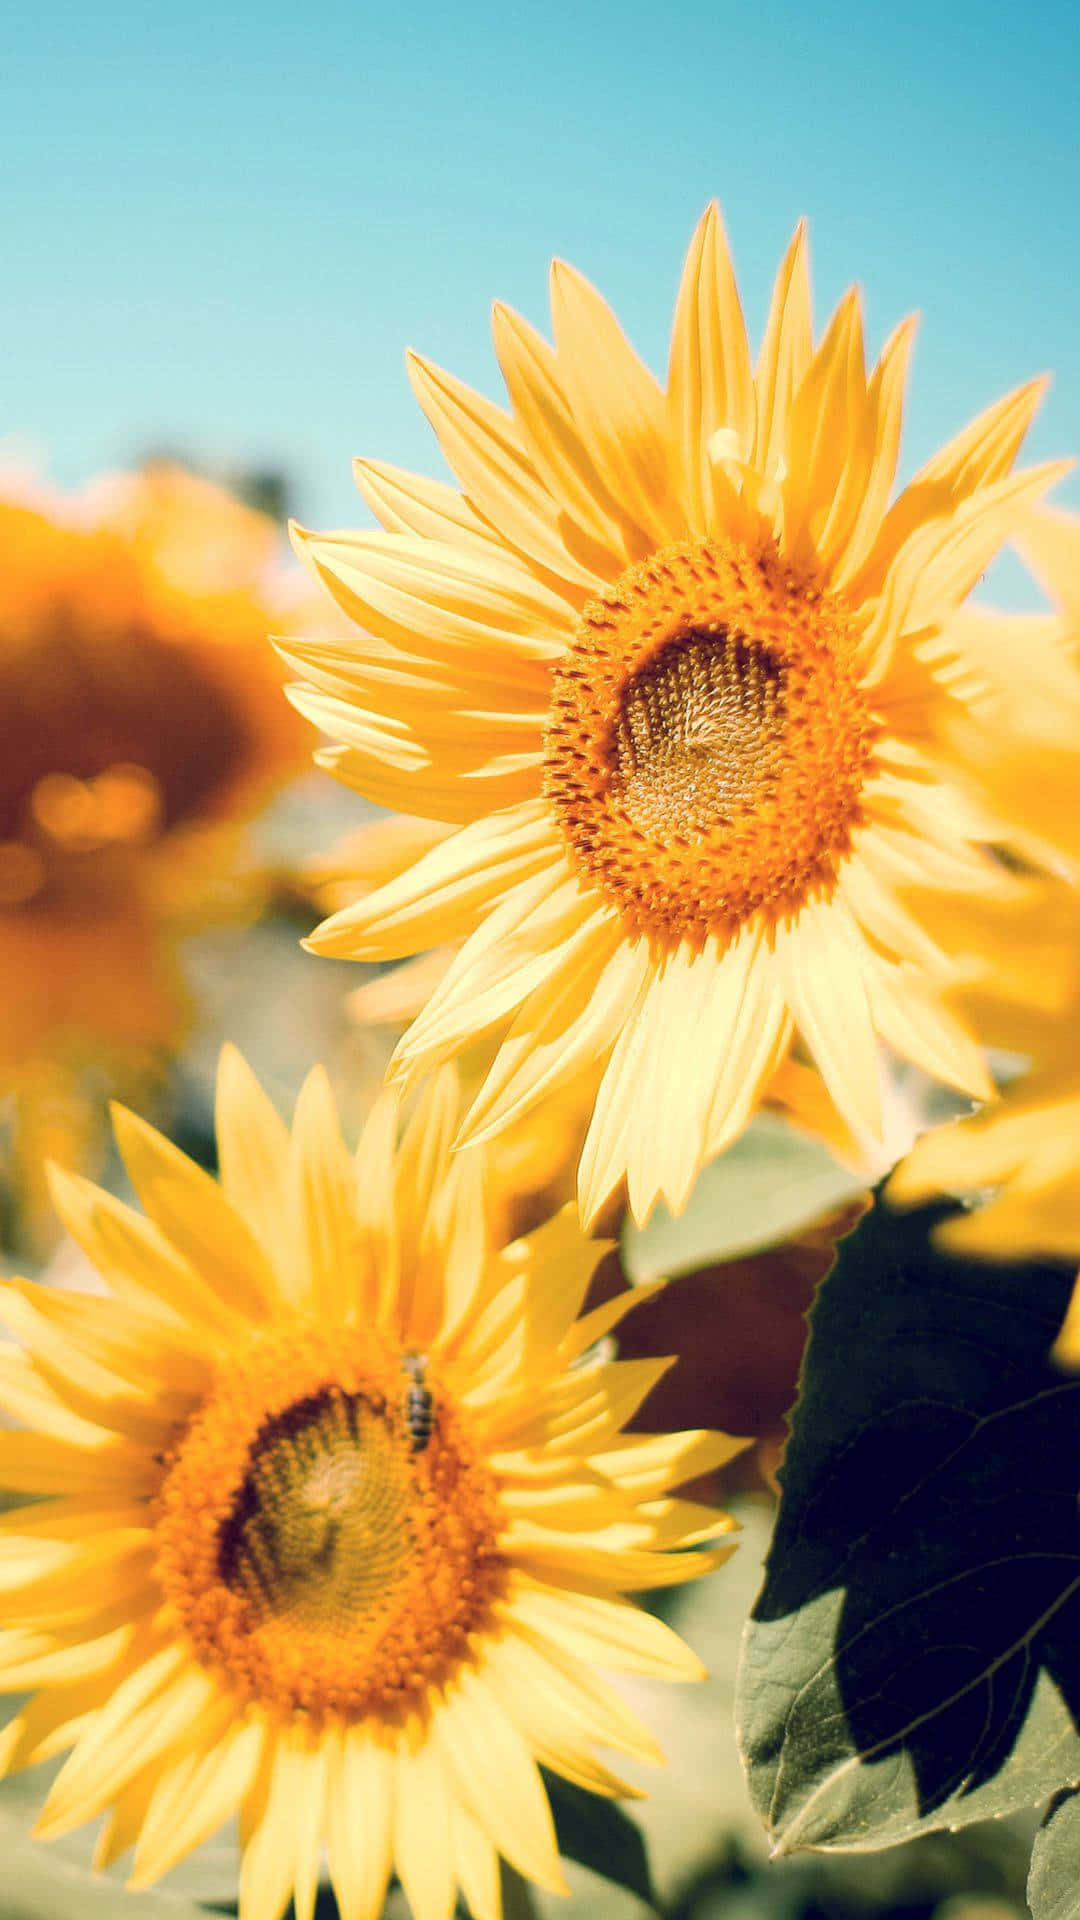 Lassensie Sich Von Der Farbexplosion Dieses Atemberaubenden Sonnenblumenmosaiks Auf Einem Iphone Verzaubern. Wallpaper